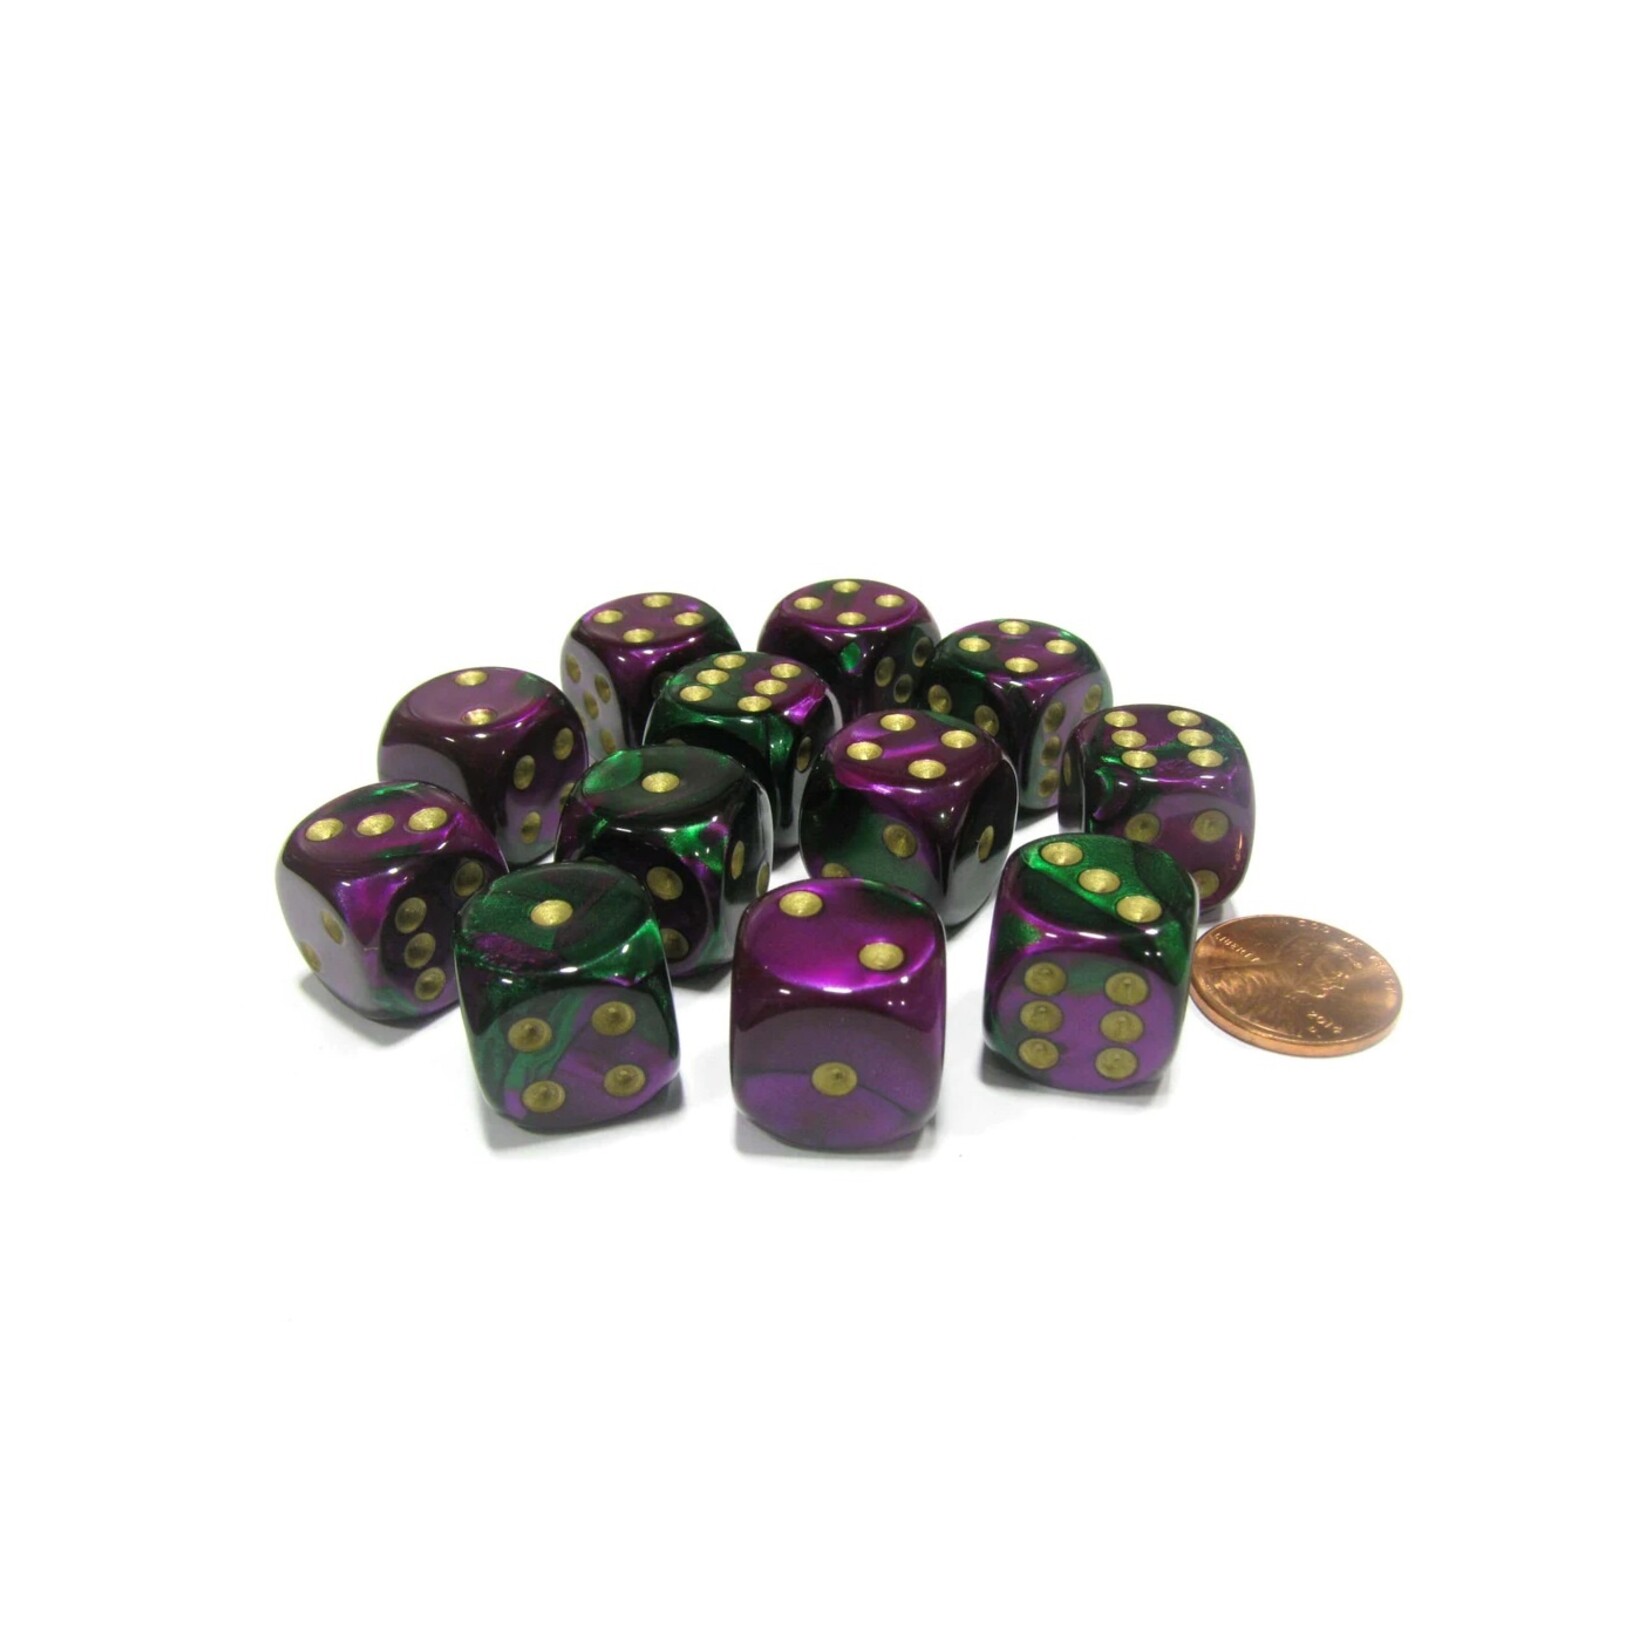 Chessex Brique de 12 d6 16mm Gemini vert/violet avec points dorés